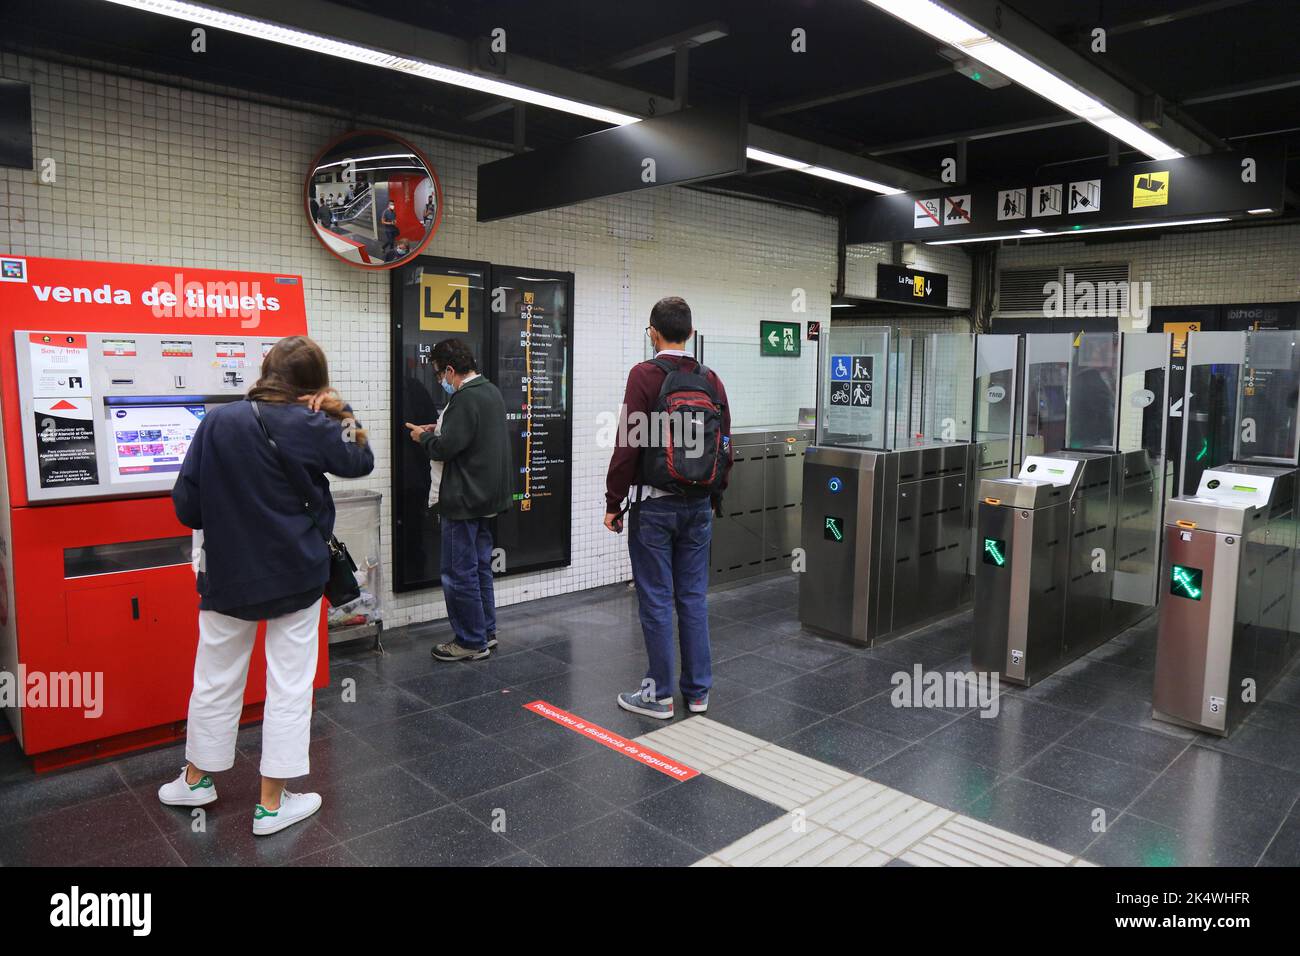 BARCELONE, ESPAGNE - 6 OCTOBRE 2021 : les passagers utilisent des guichets dans le métro de Barcelone, en Espagne. Le métro de Barcelone est un réseau de transport électrique rapide Banque D'Images